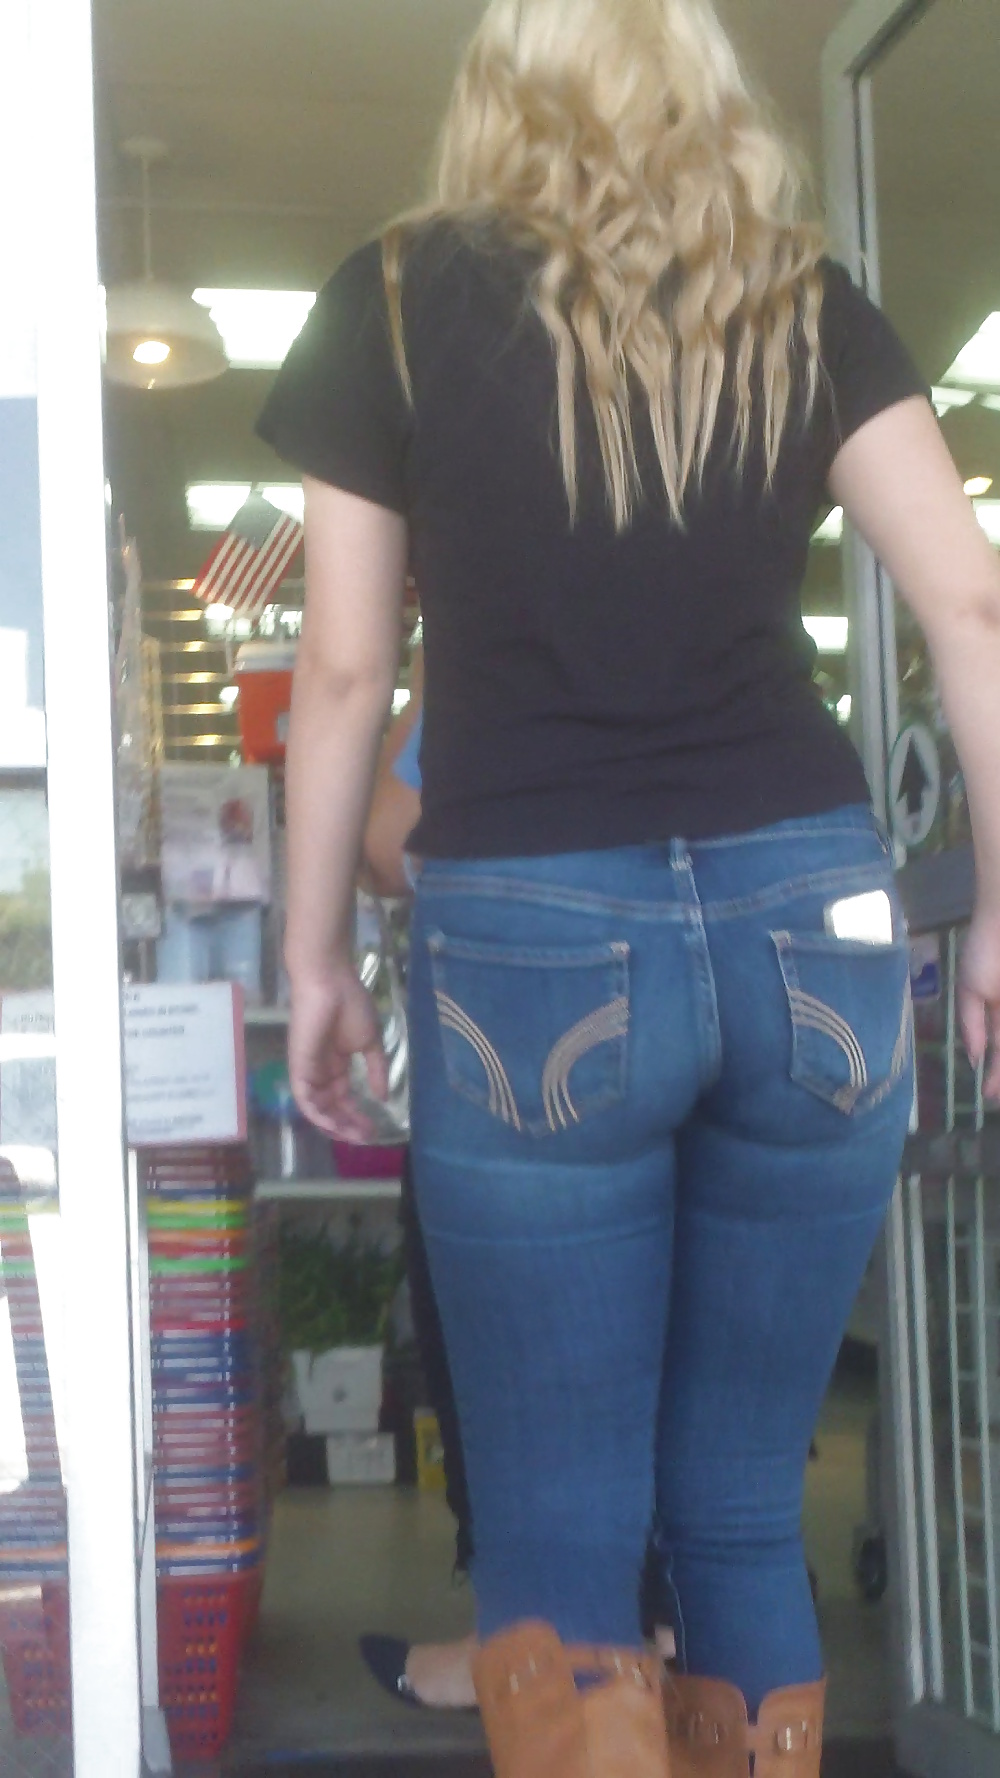 Popular teen girls ass & butt in jeans part 4  #26740220